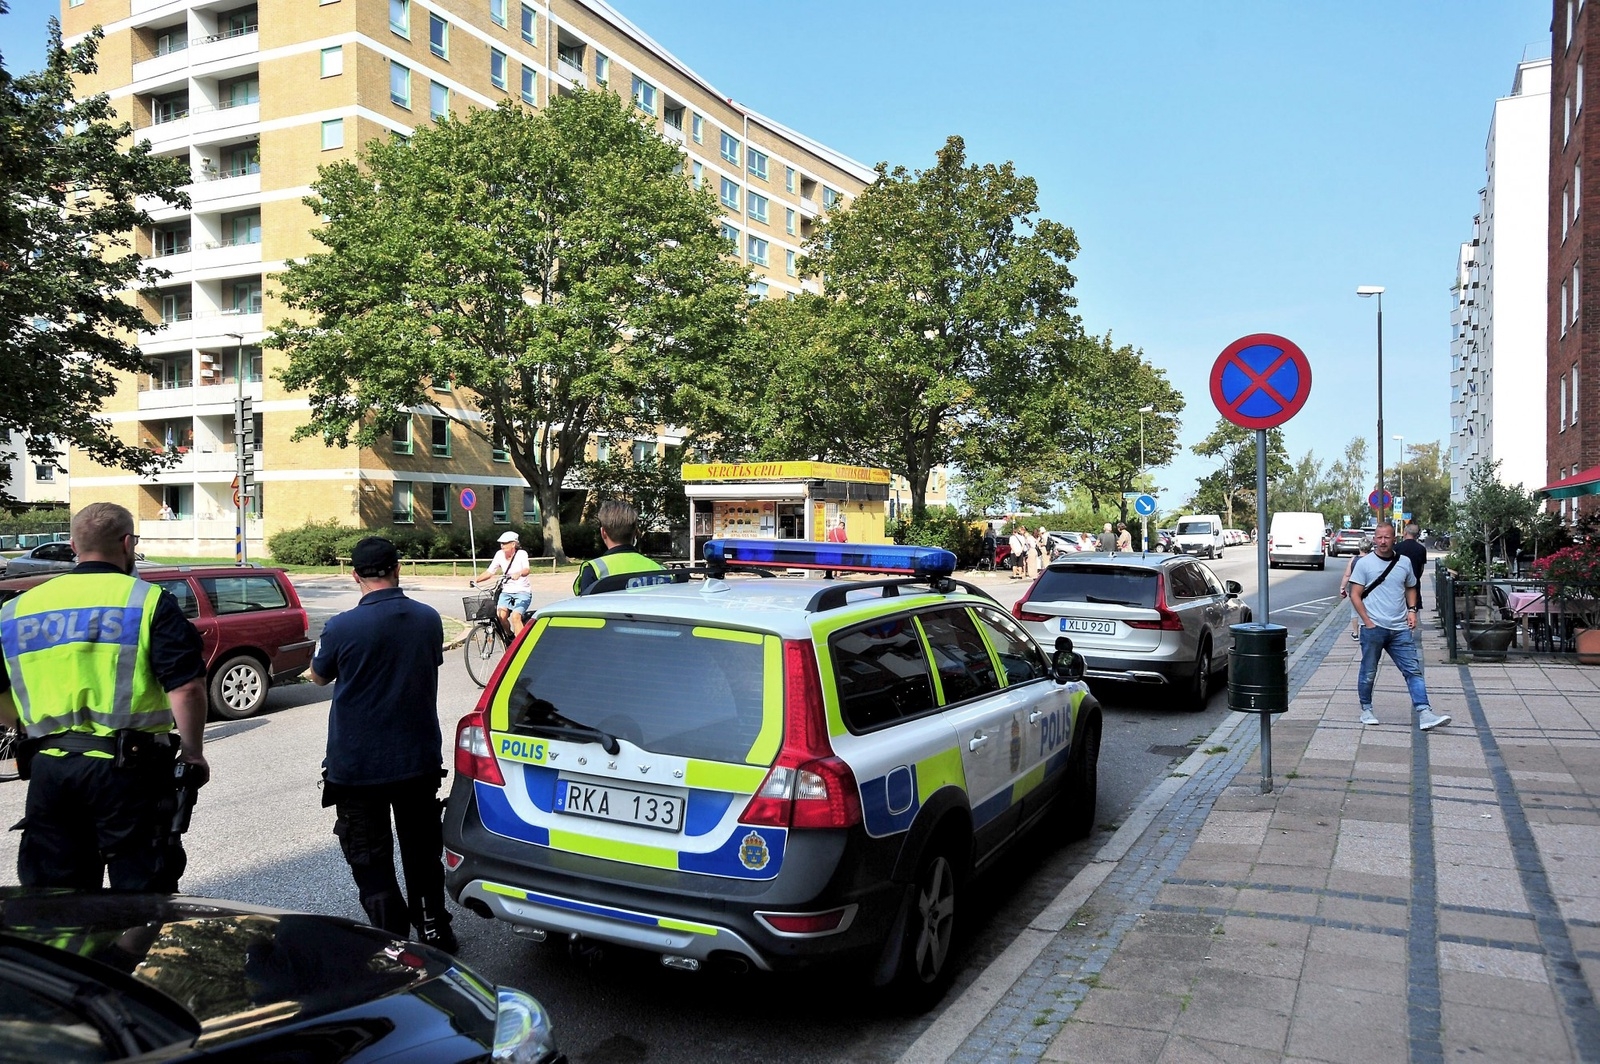 Polisen fortsätter att samla information i området där mordet skedde. De håller sig också synliga för att skapa trygghet. Foto: Stefan Persson